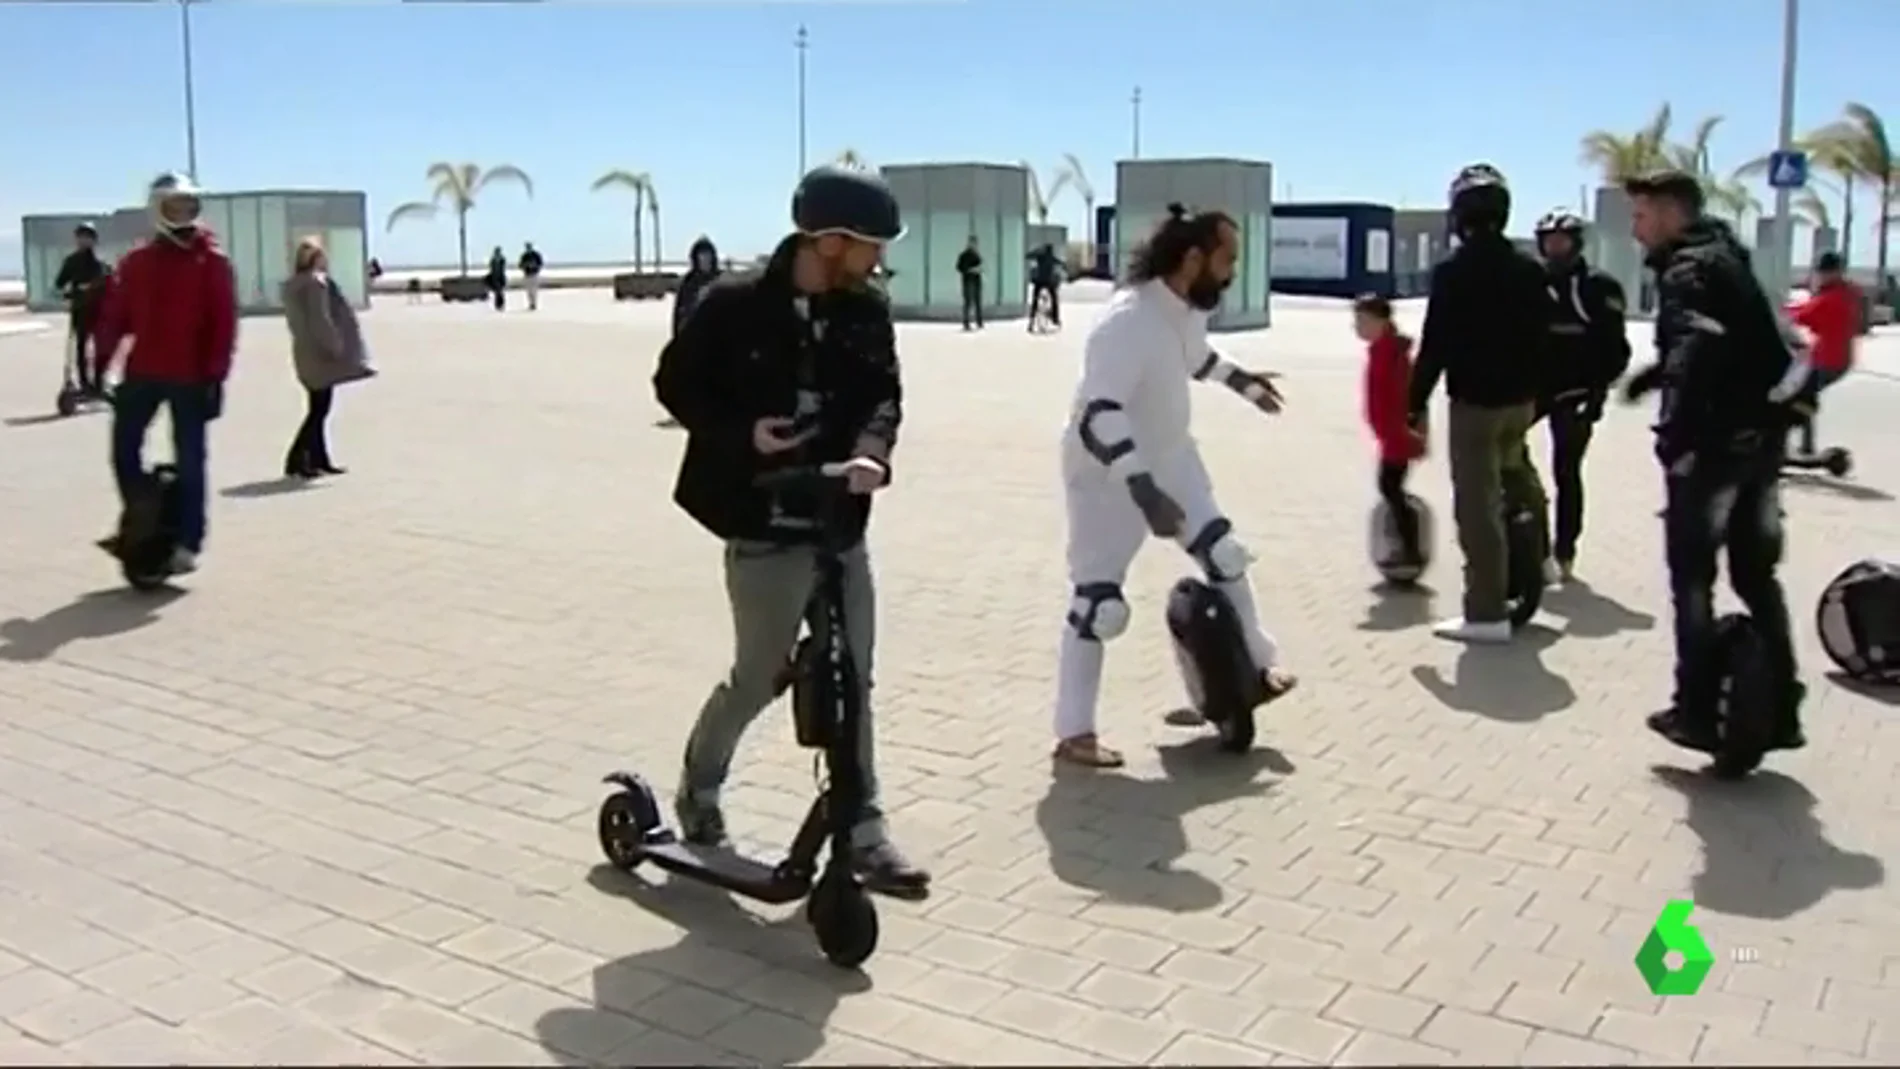 Los usuarios de los patinetes eléctricos protestan por la nueva normativa de la DGT